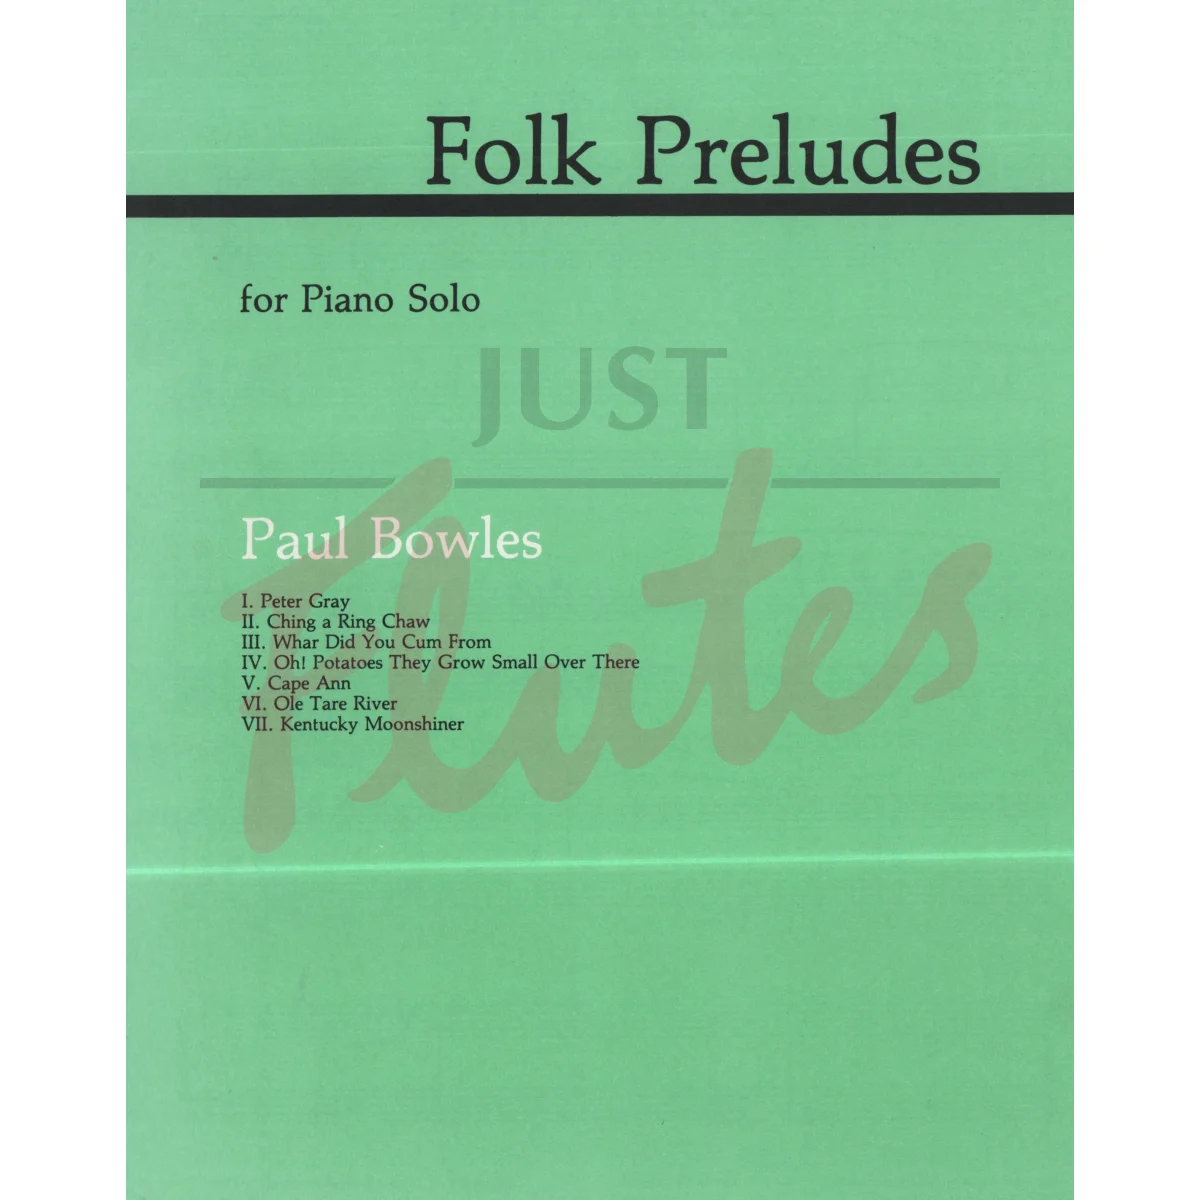 Folk Preludes for Piano